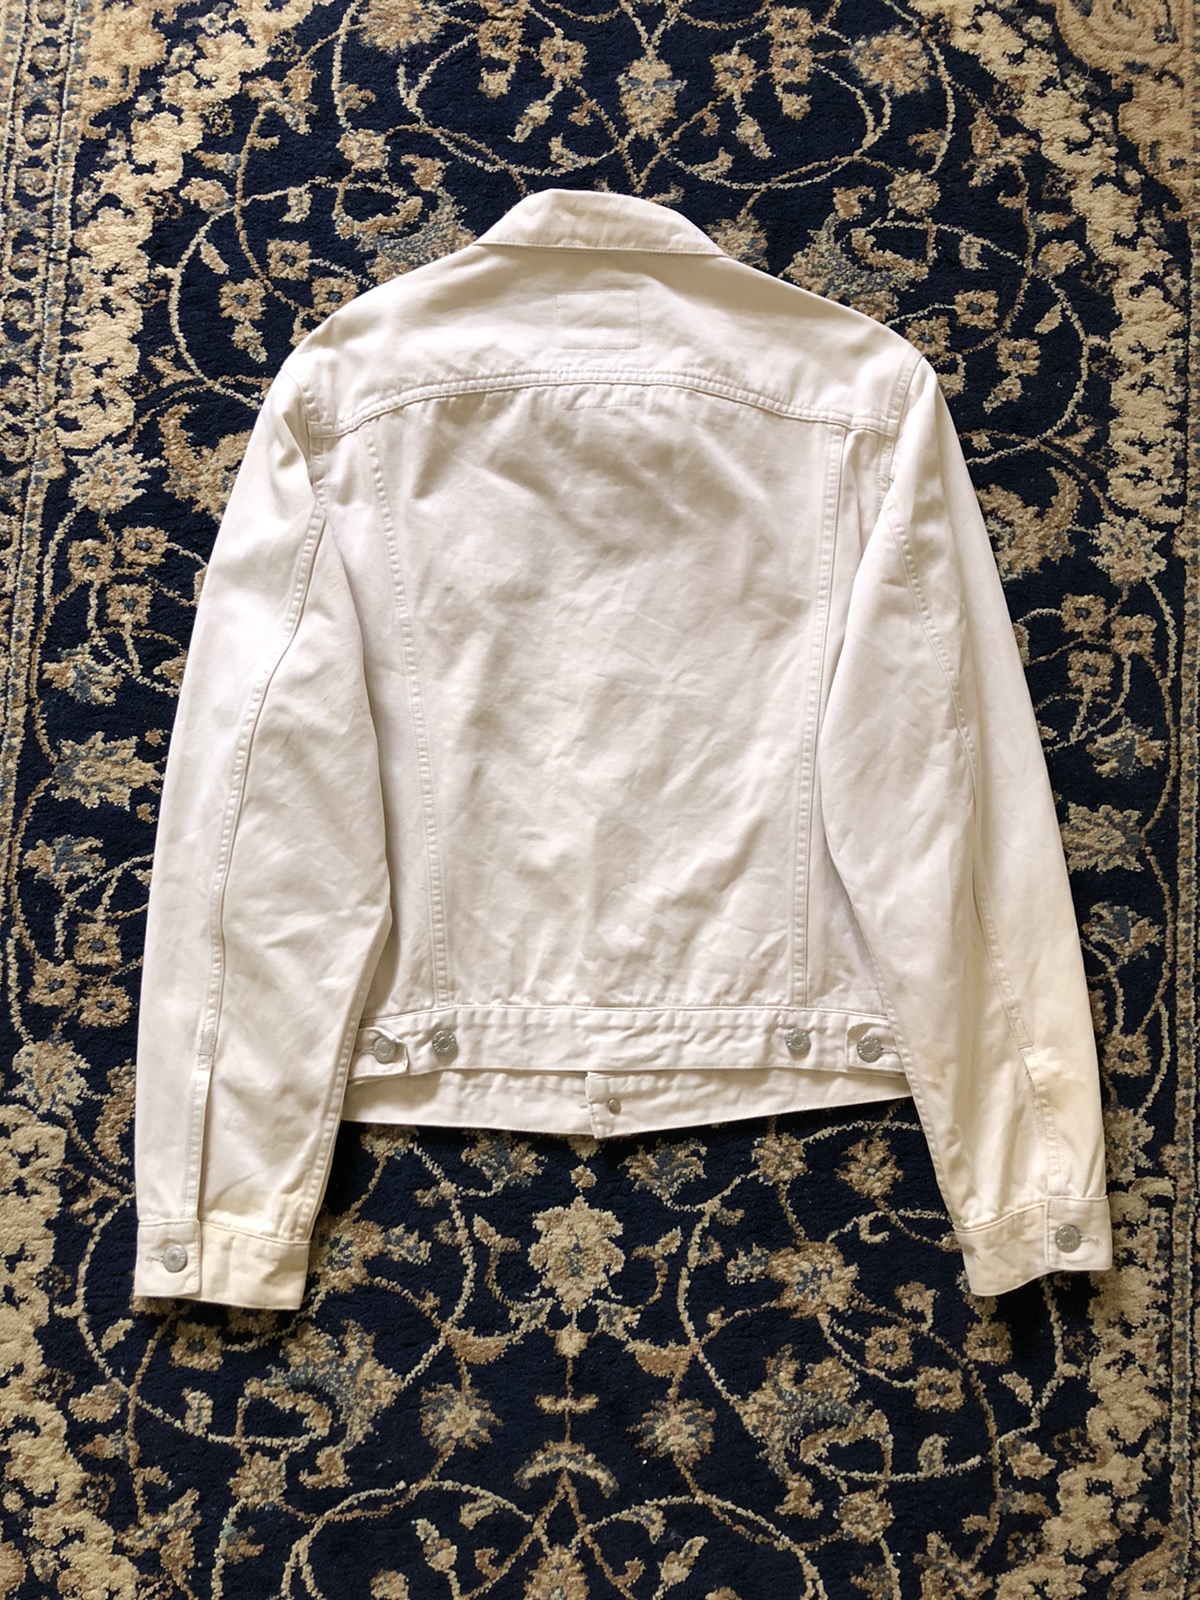 1998 Helmut Lang Off-white Vintage Cotton Jacket - 7